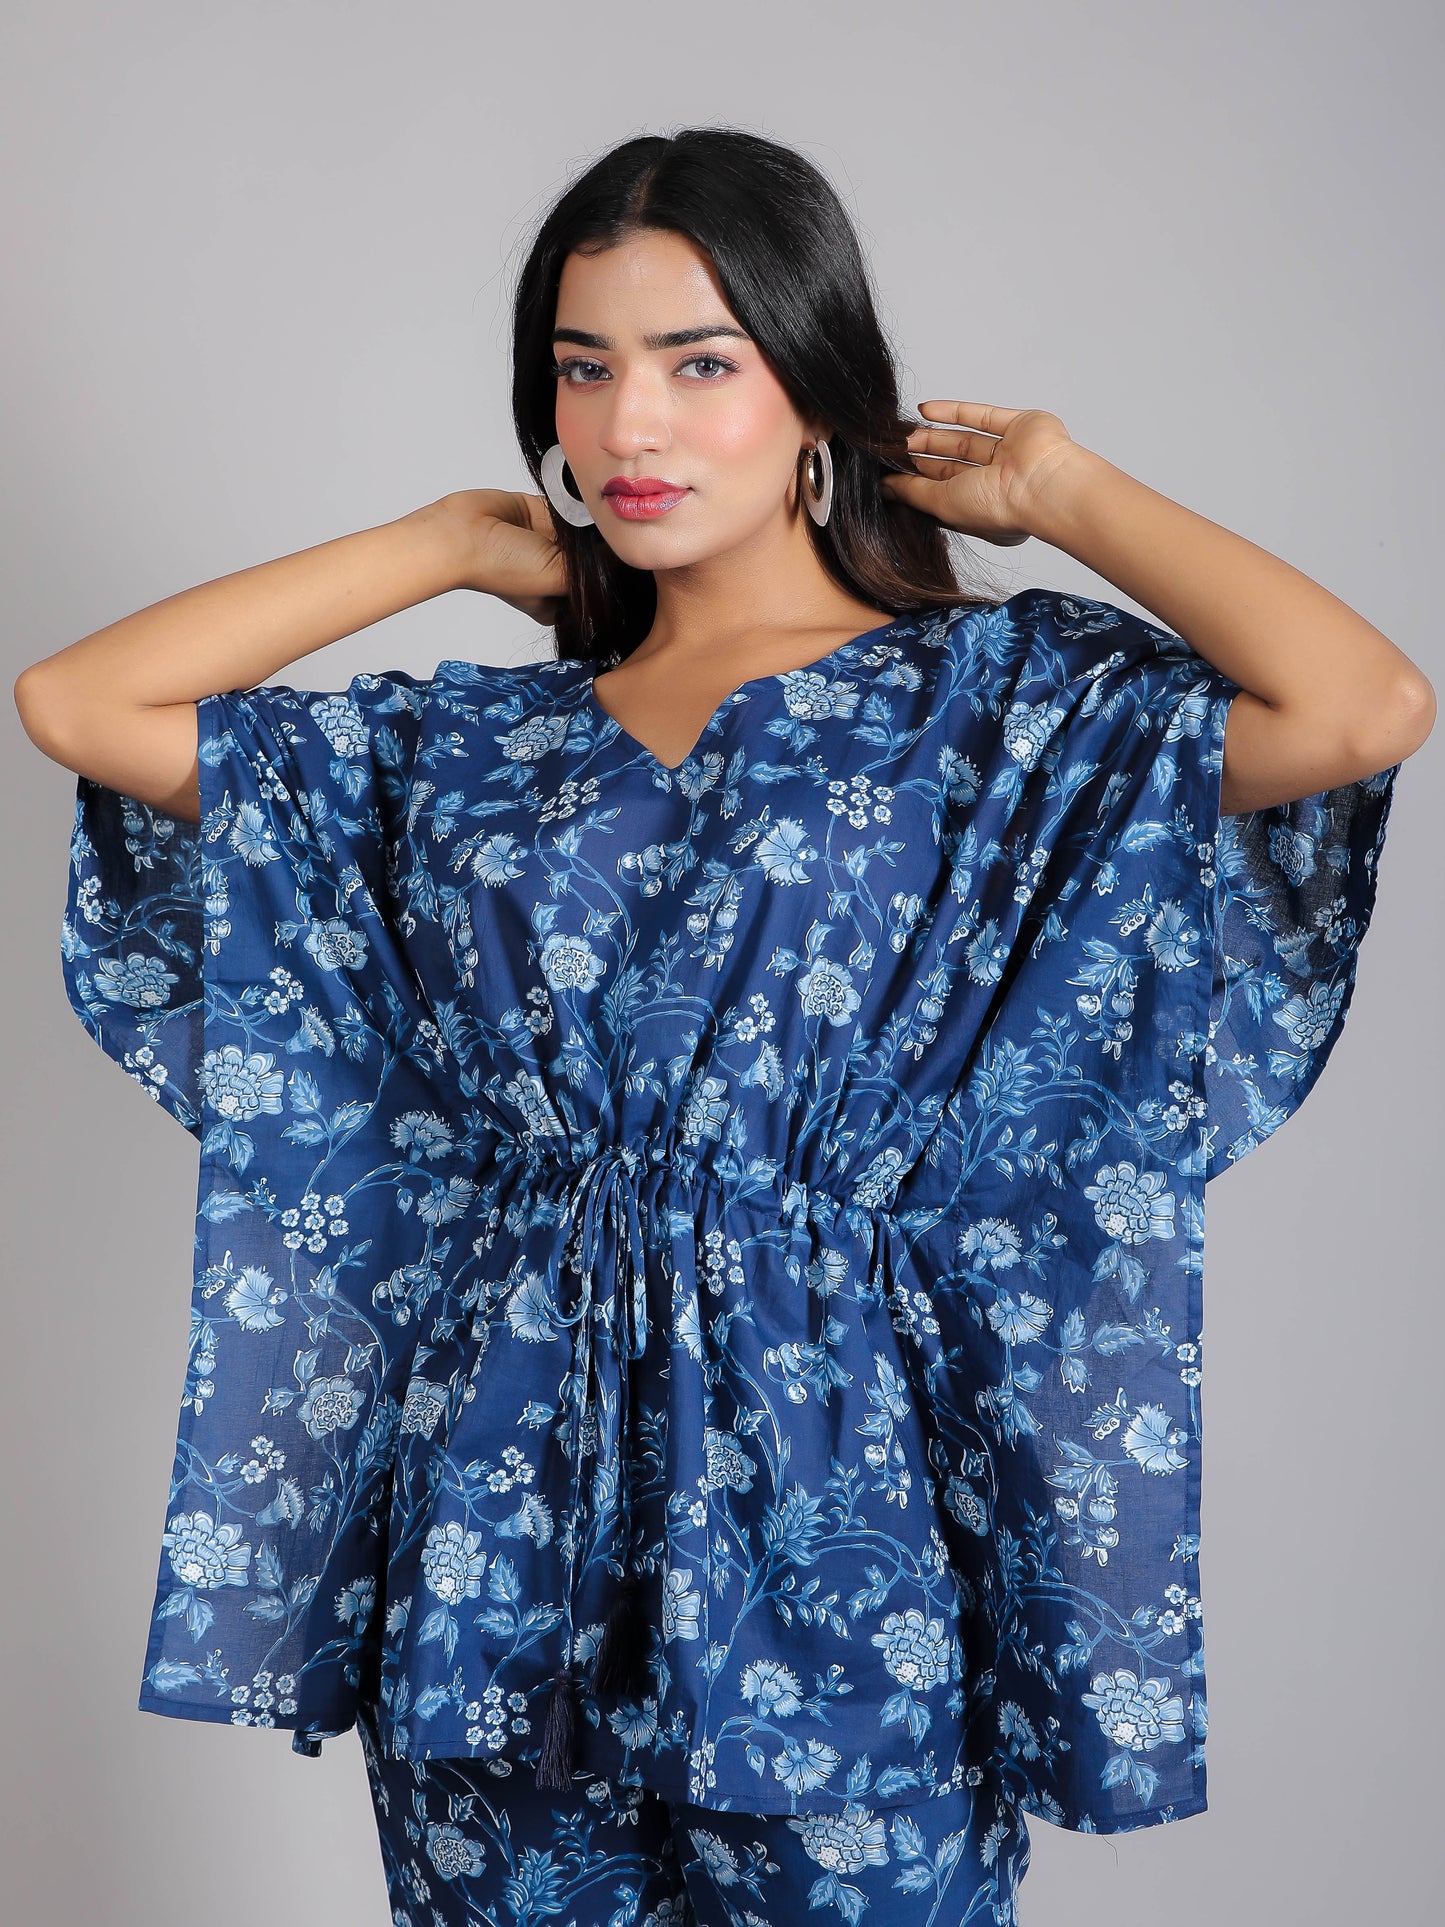 Blue Floral Motifs on Blue Cotton Kaftan Top Pant Set